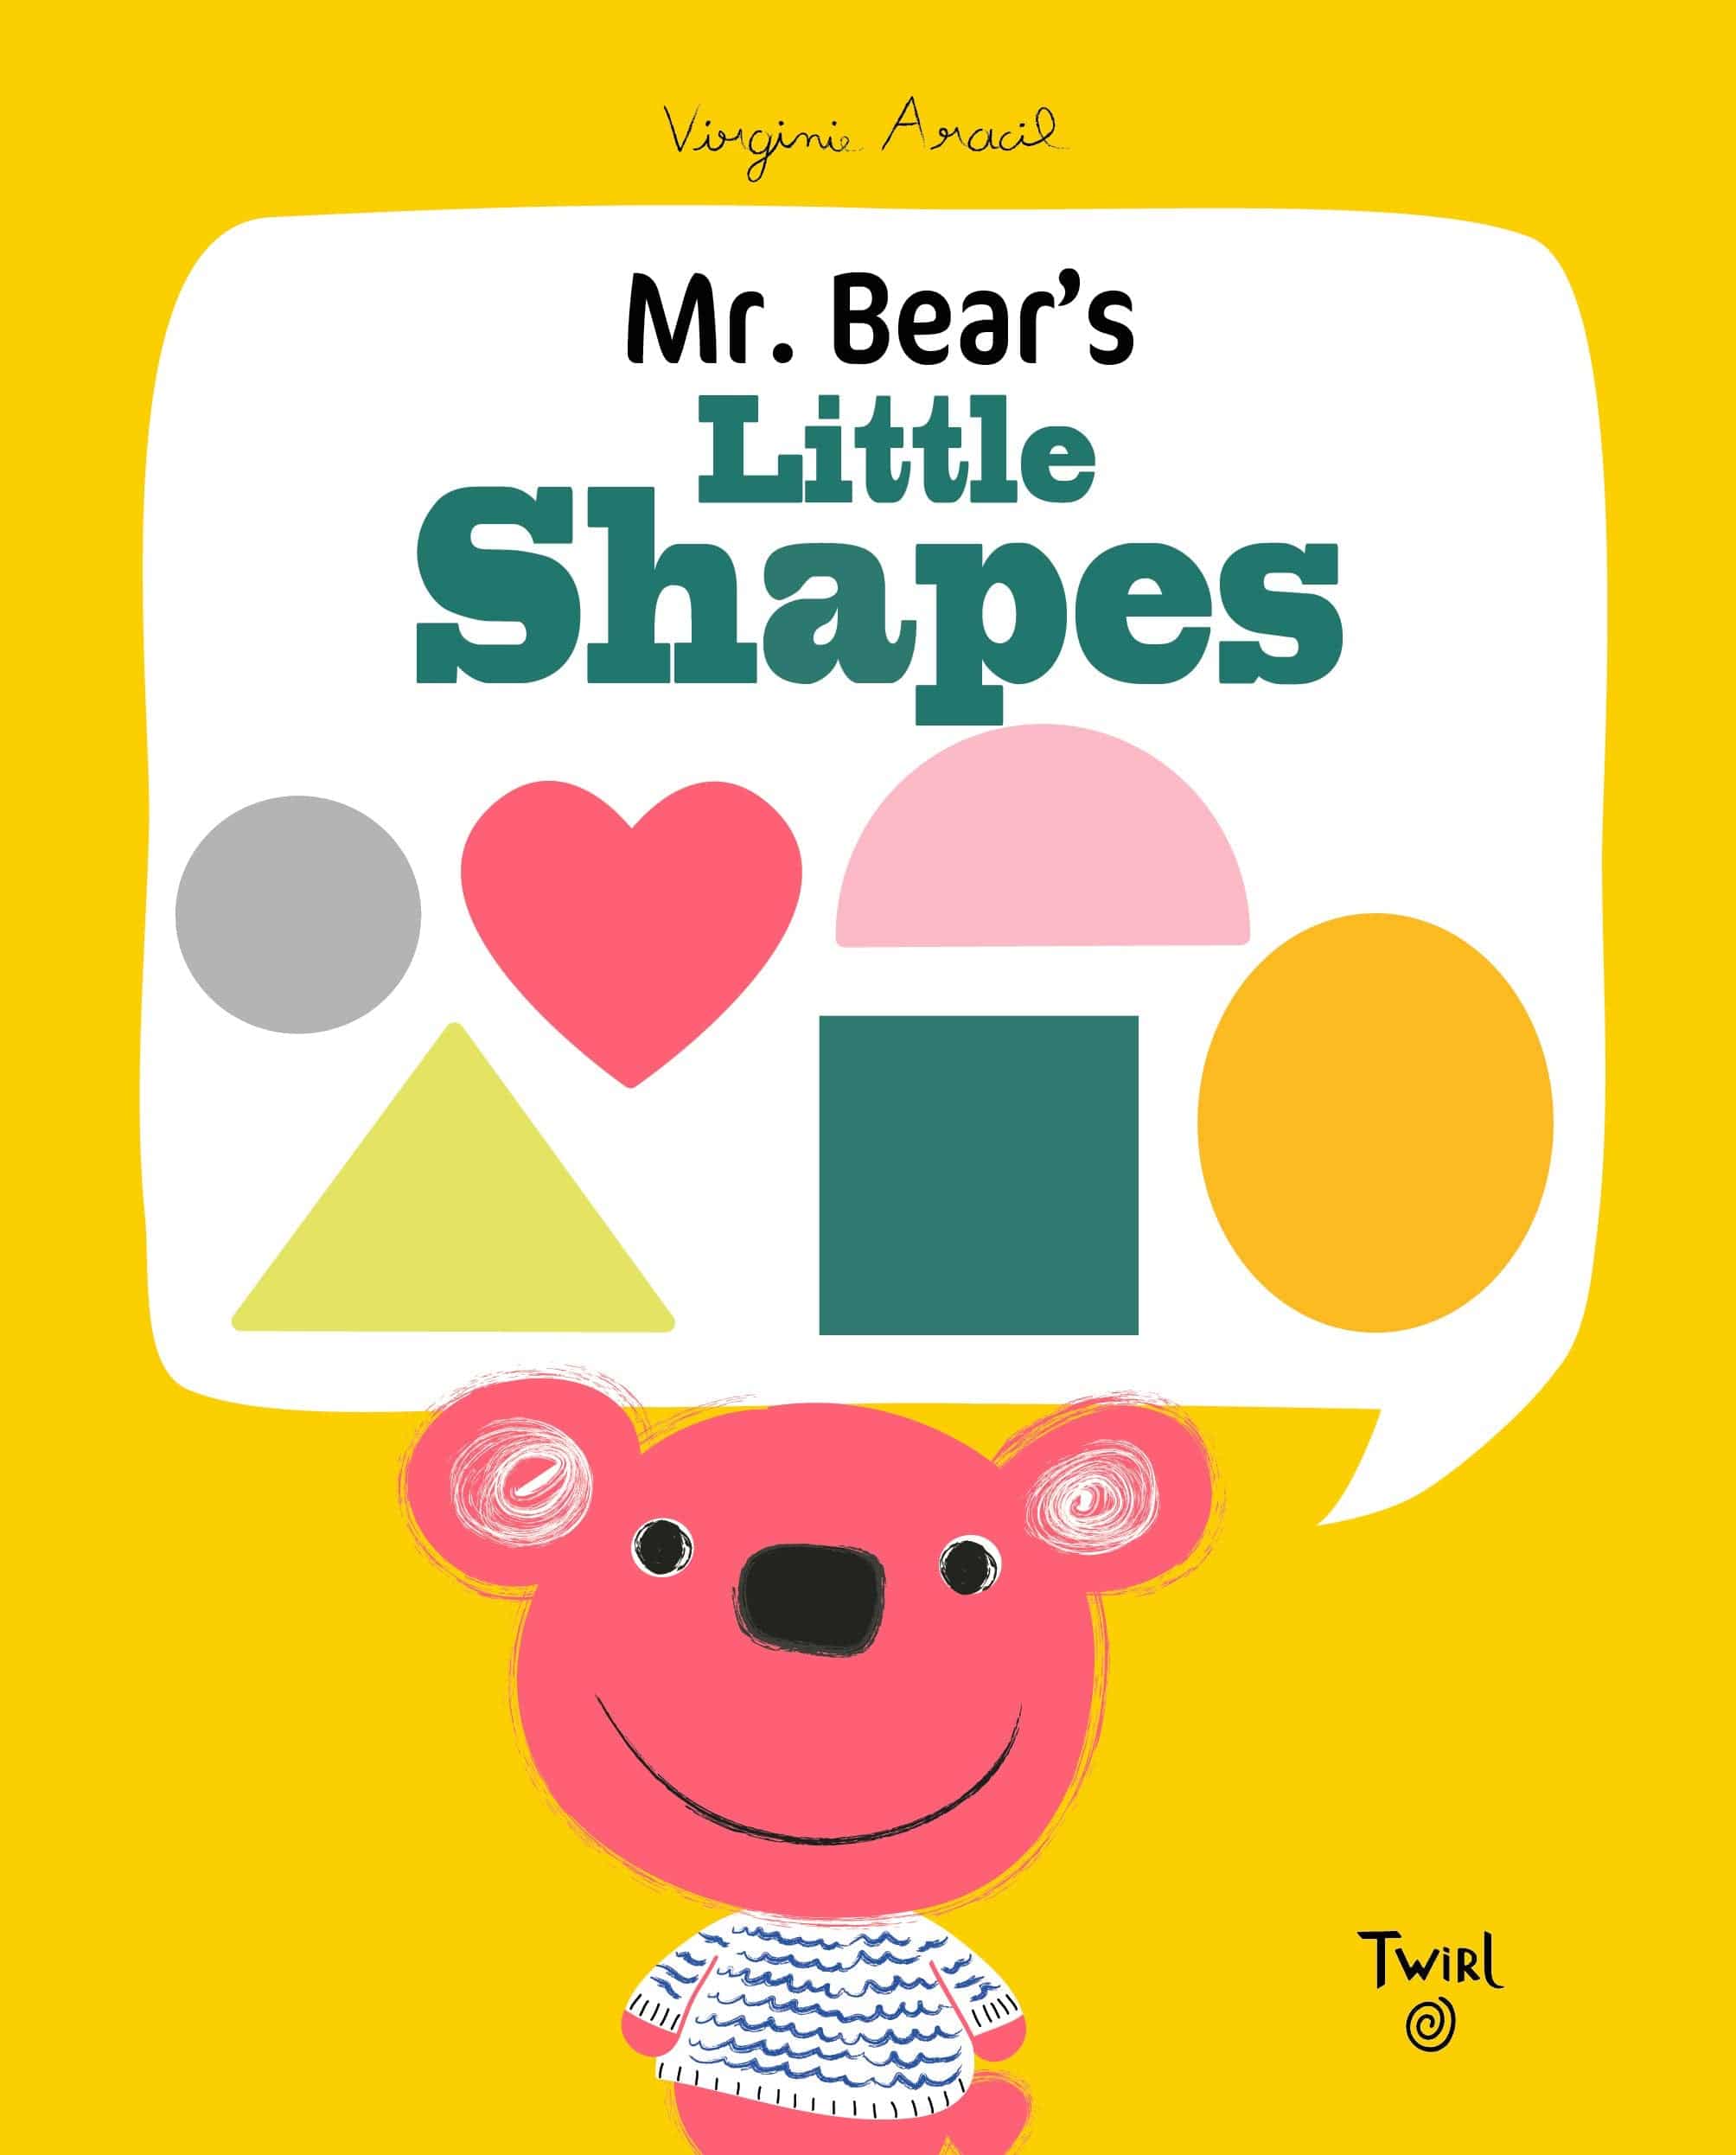 Mr. Bear's Little Shapes - Twinkle Twinkle Little One